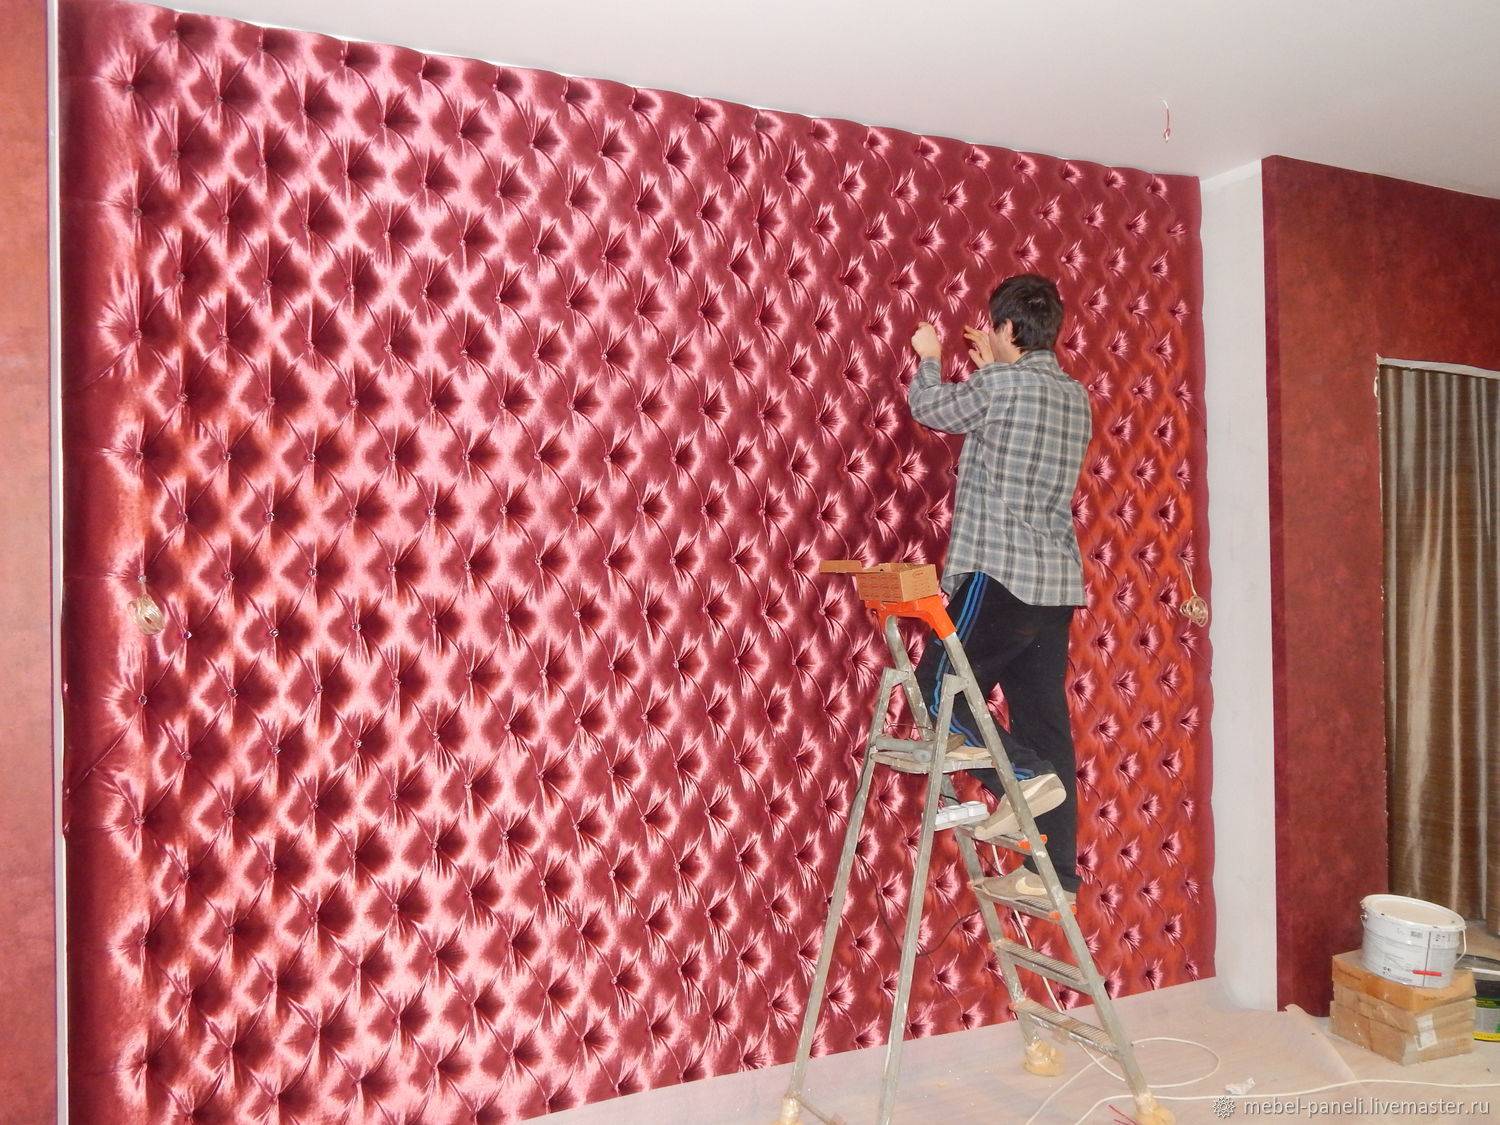 Драпировка стен тканью своими руками — фото, видео обивки, как наклеить материал на вертикальную поверхность